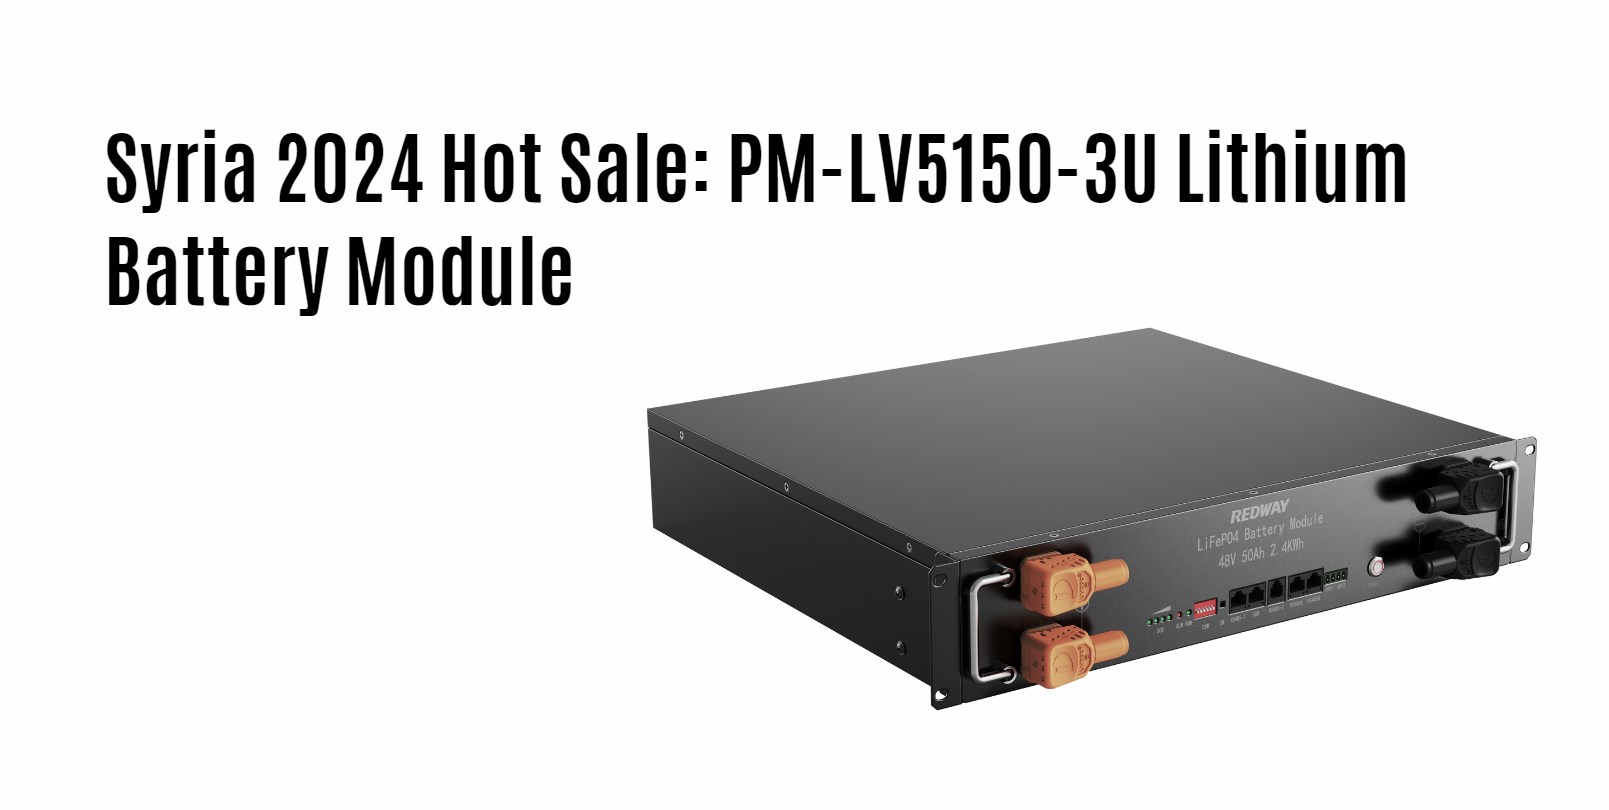 Syria 2024 Hot Sale: PM-LV5150-3U Lithium Battery Module. 51.2v 50ah server rack battery factory manufacturer oem